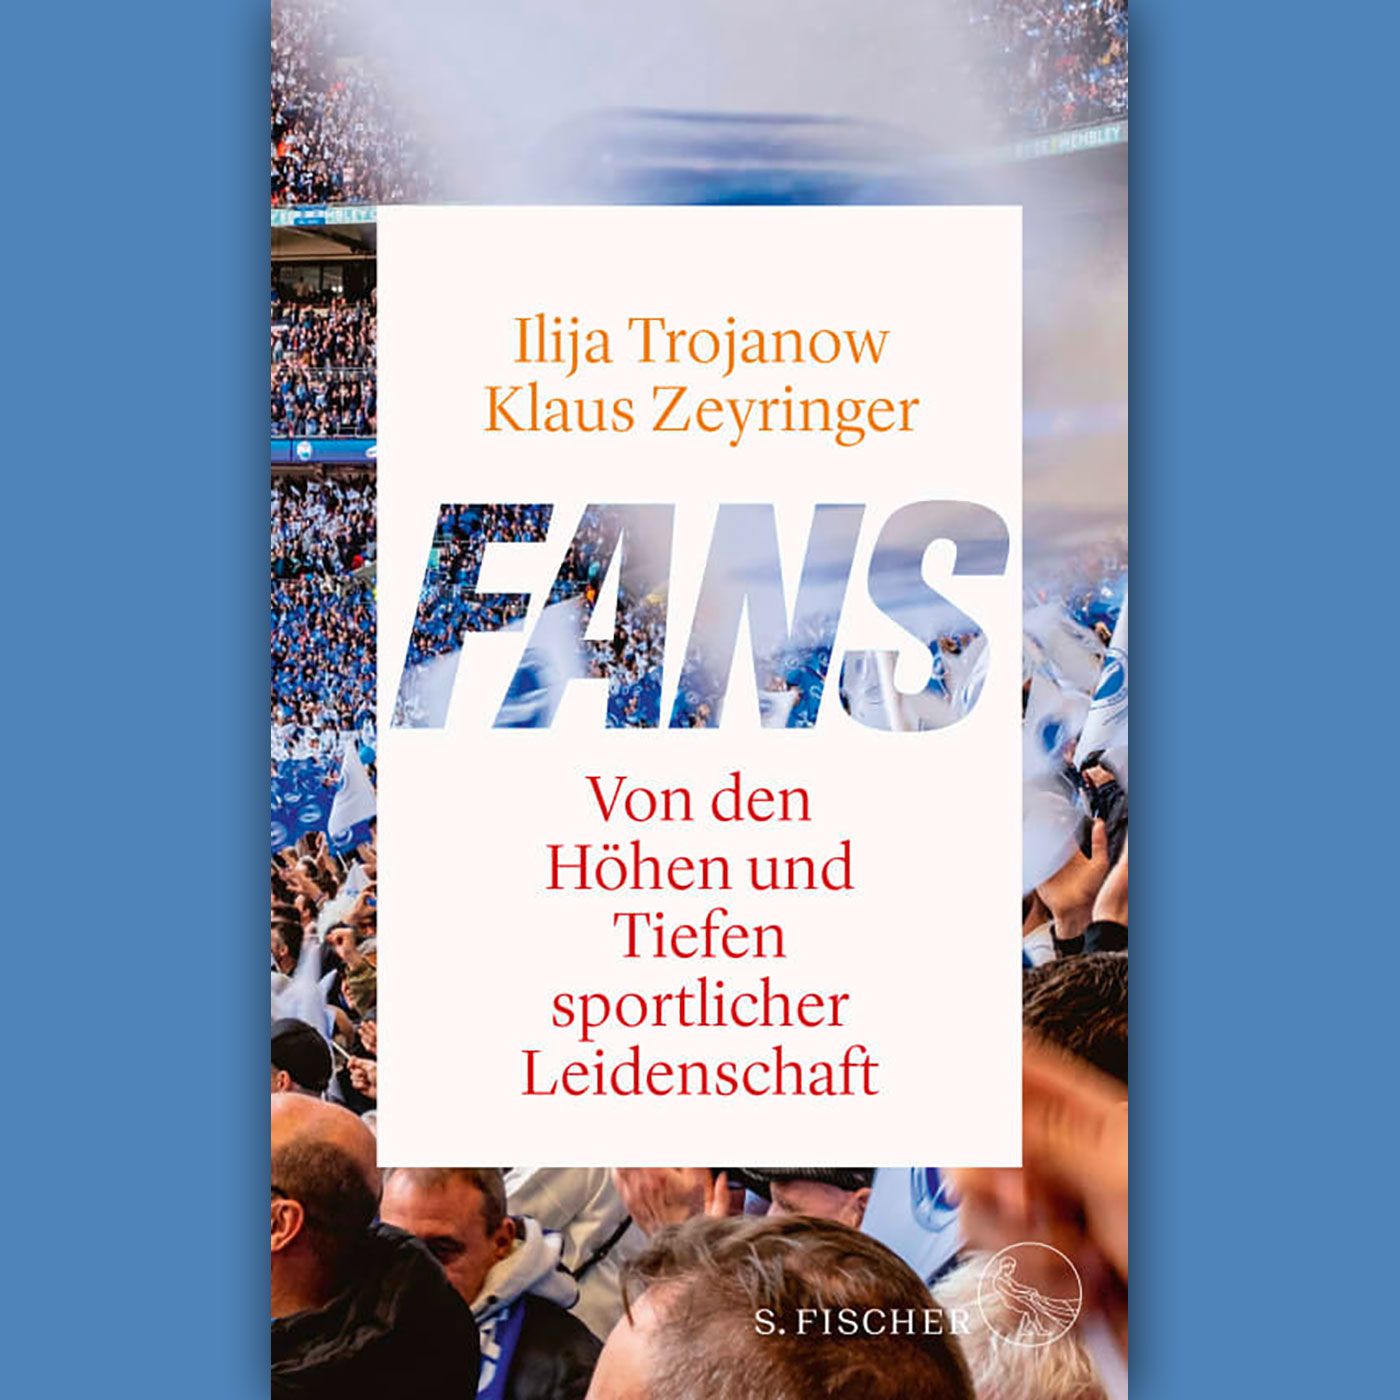 Iljia Trojanow, Klaus Zeyringer: "Fans. Von den Höhen und Tiefen sportlicher Leidenschaft"